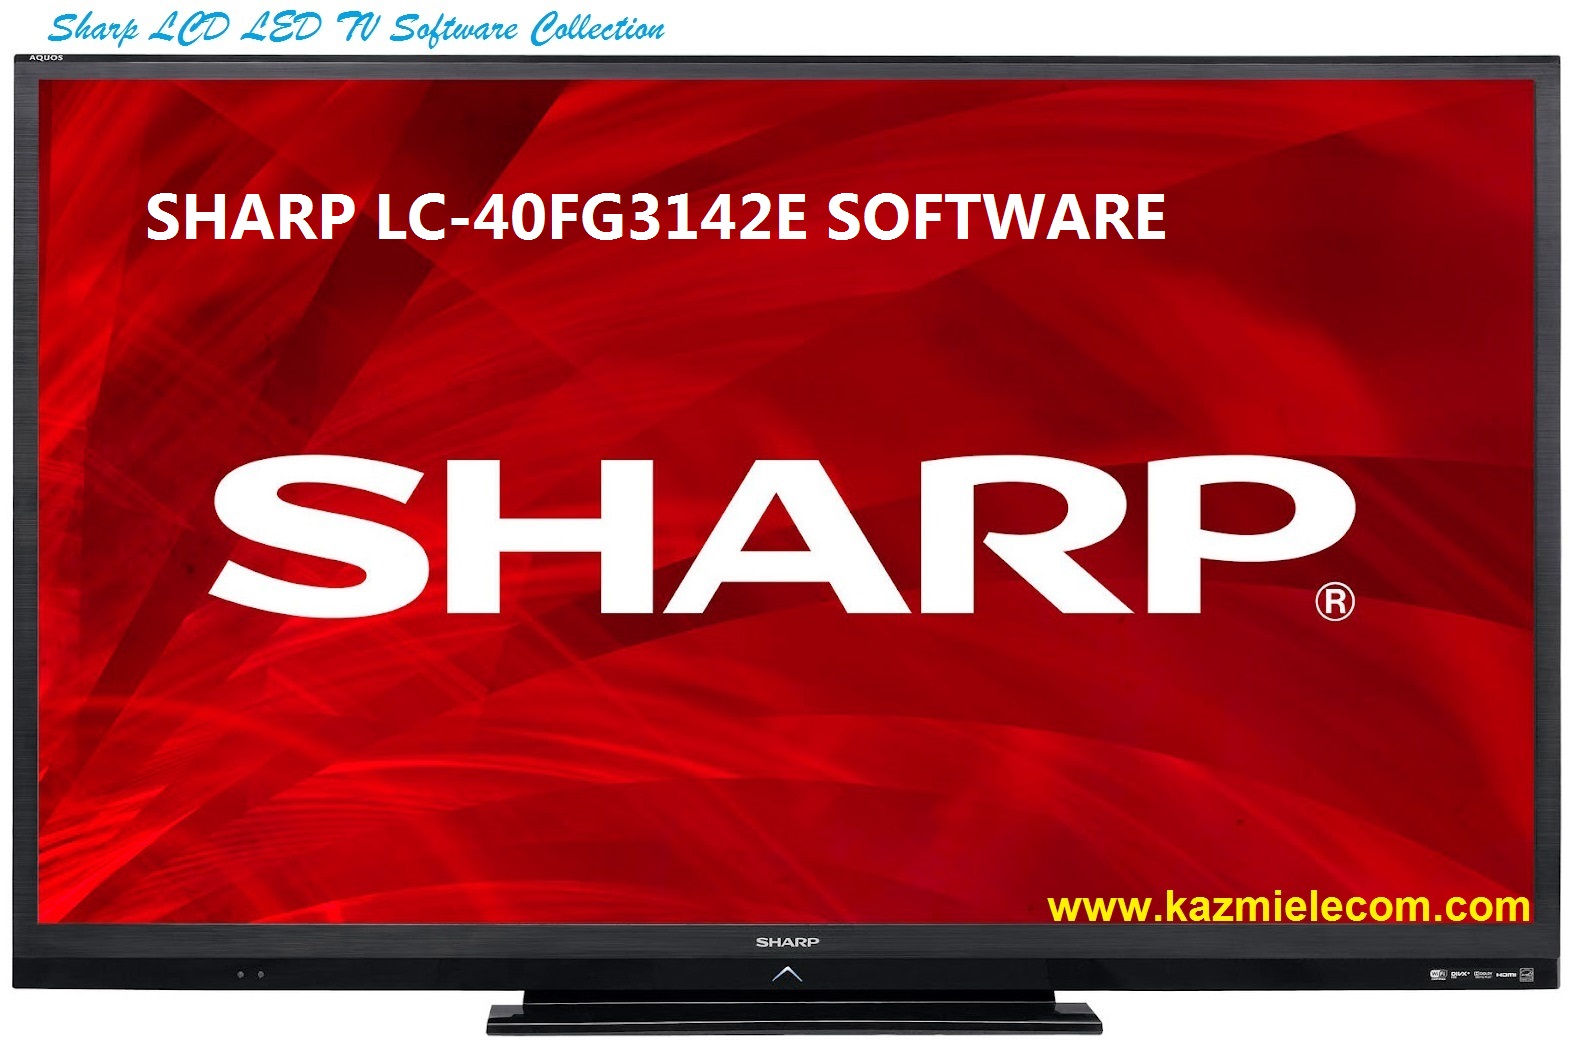 Sharp Lc-40Fg3142E